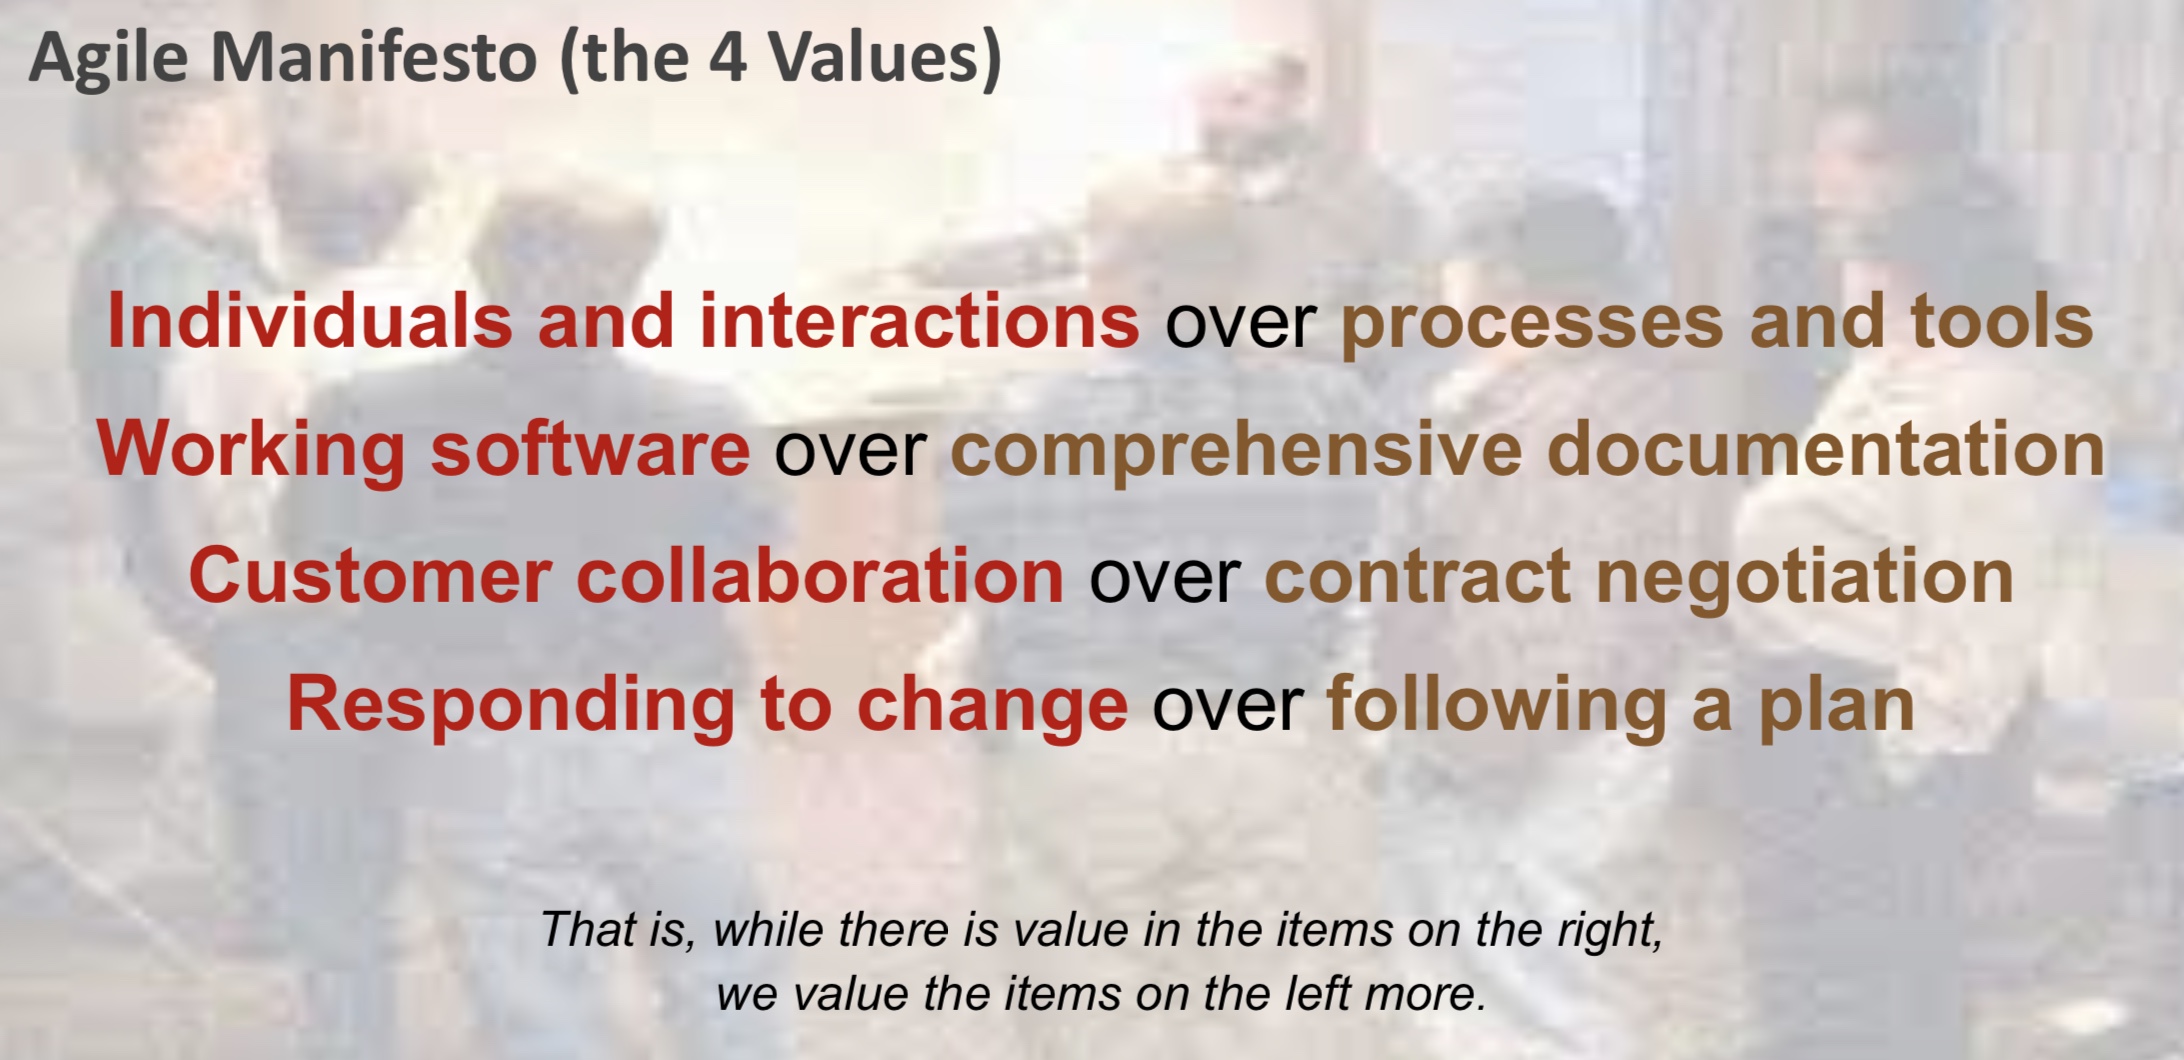 Agile Manifesto erklärt die 4 Werte der Programmierung